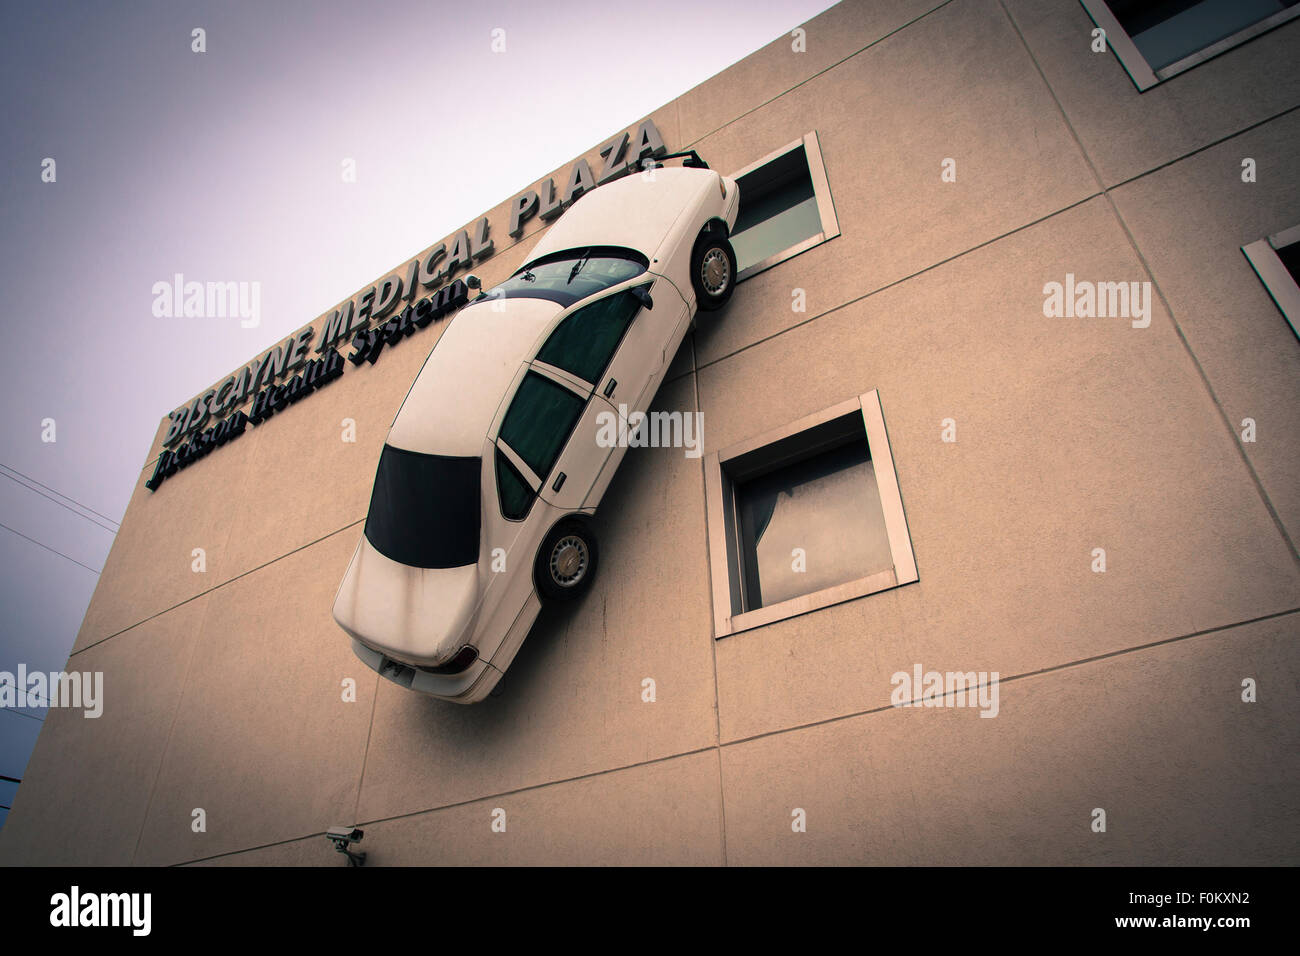 L'installation d'art dans la ville de du Biscayne Medical Plaza. Une voiture blanche est collée à la verticale sur la façade. Banque D'Images